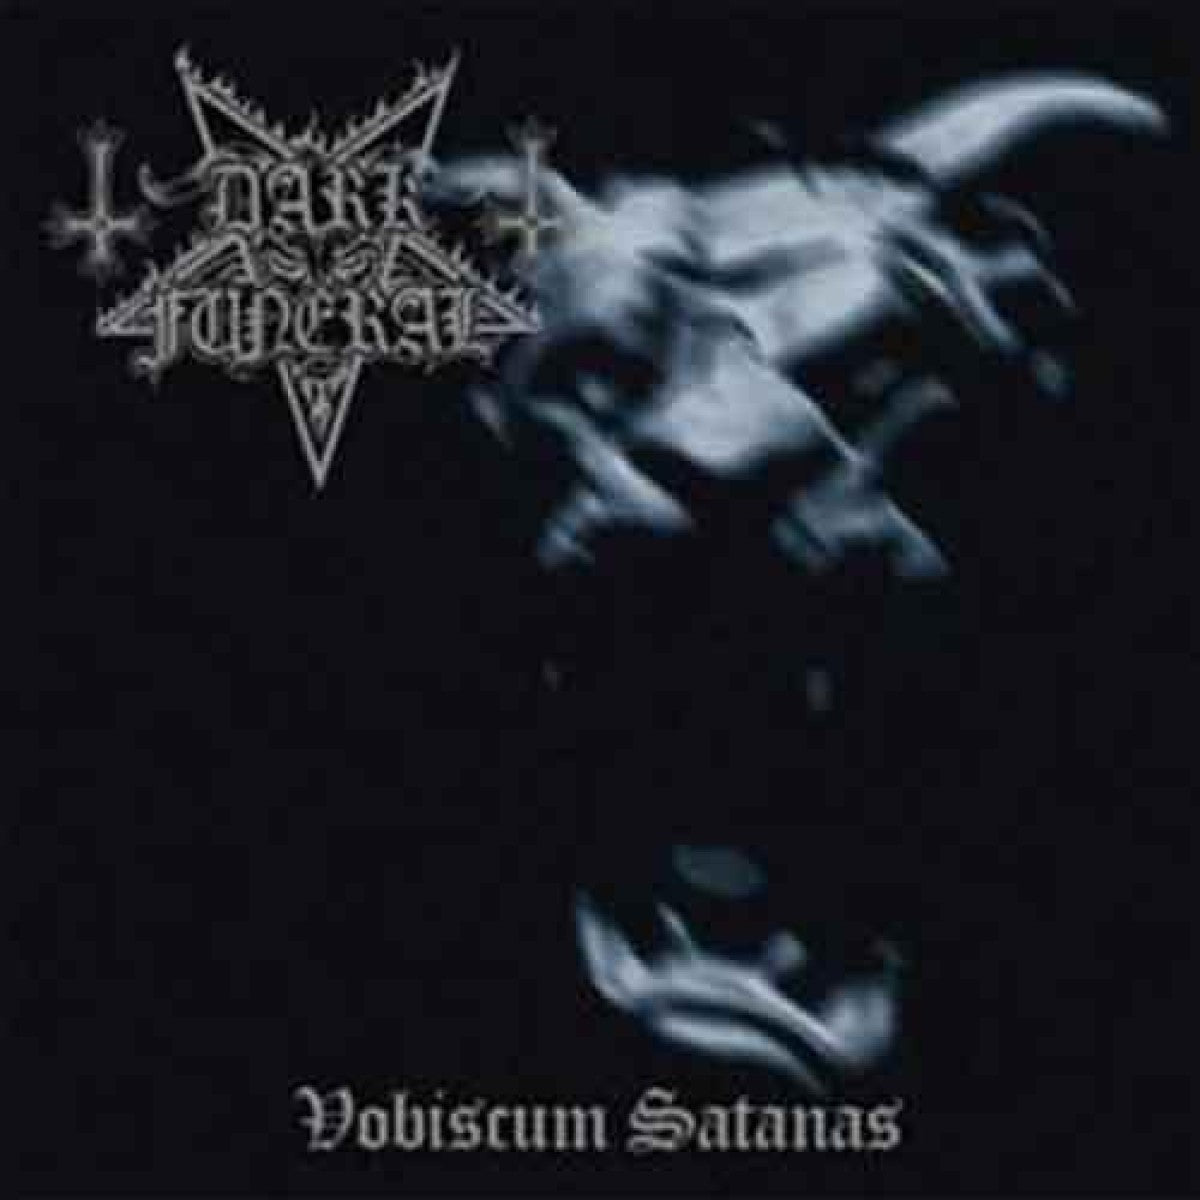 Dark Funeral "Vobiscum Satanas" Gatefold 180g Blood Red Vinyl with Poster